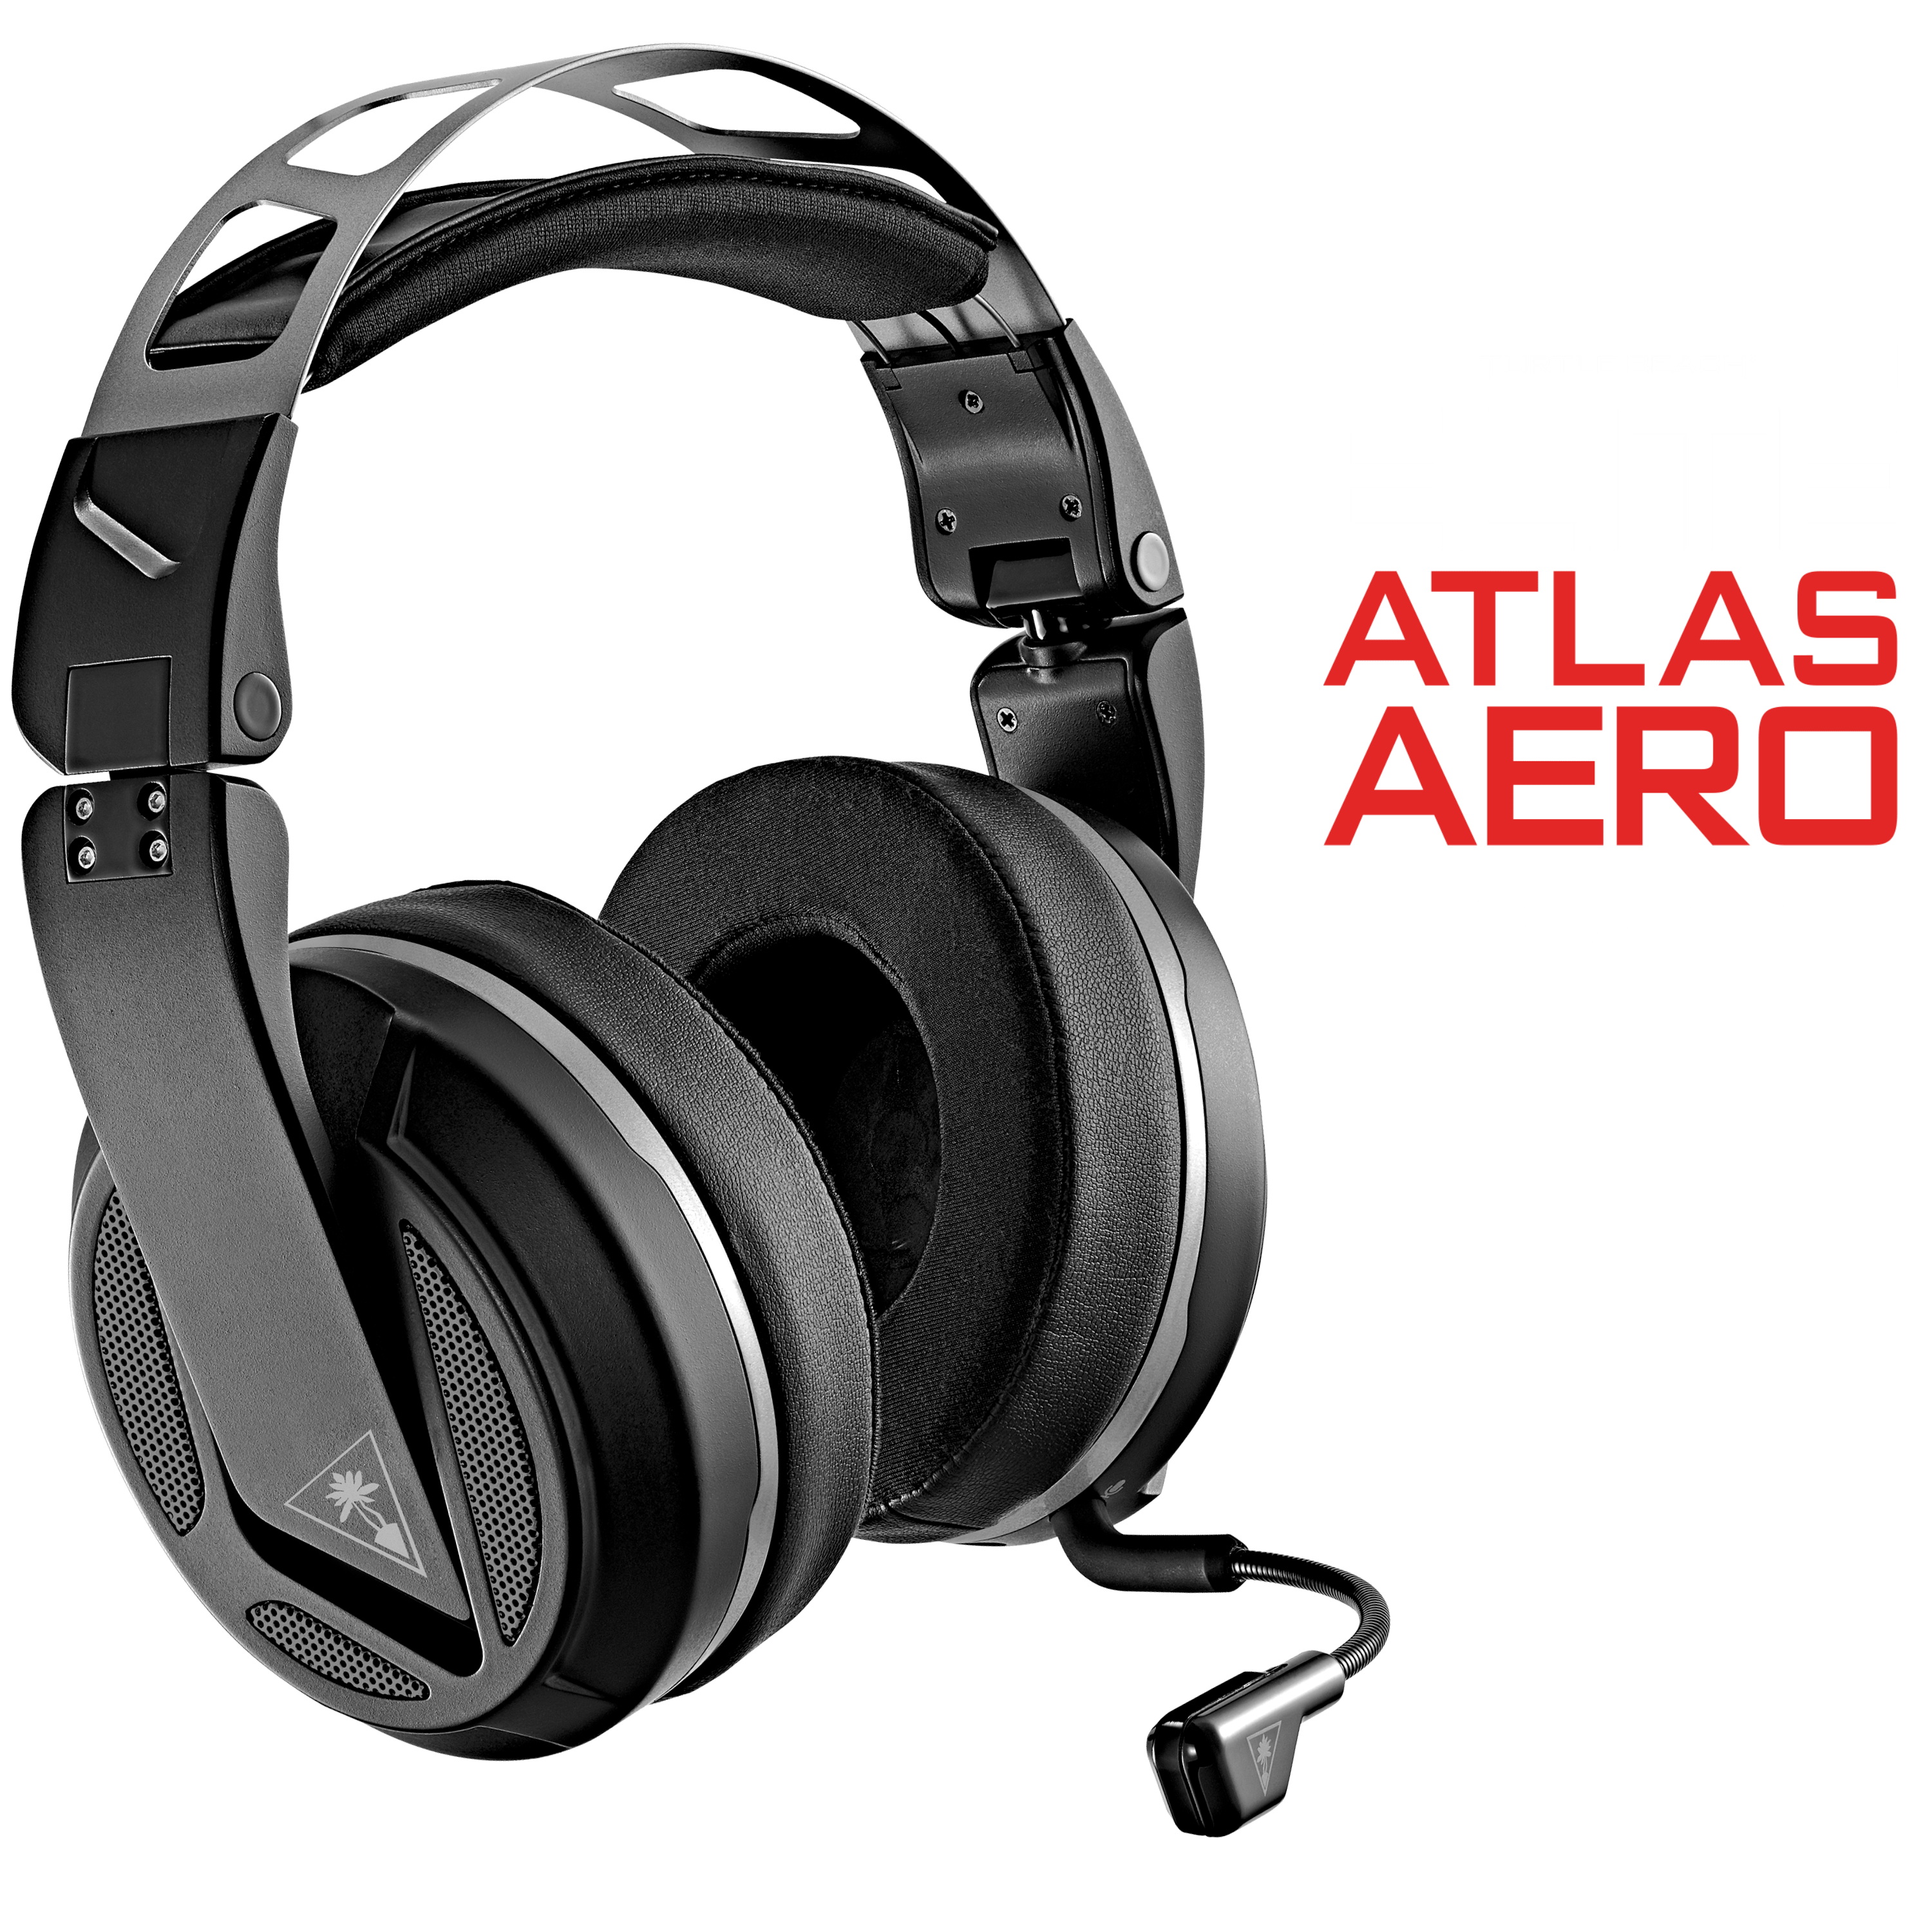 elite atlas aero